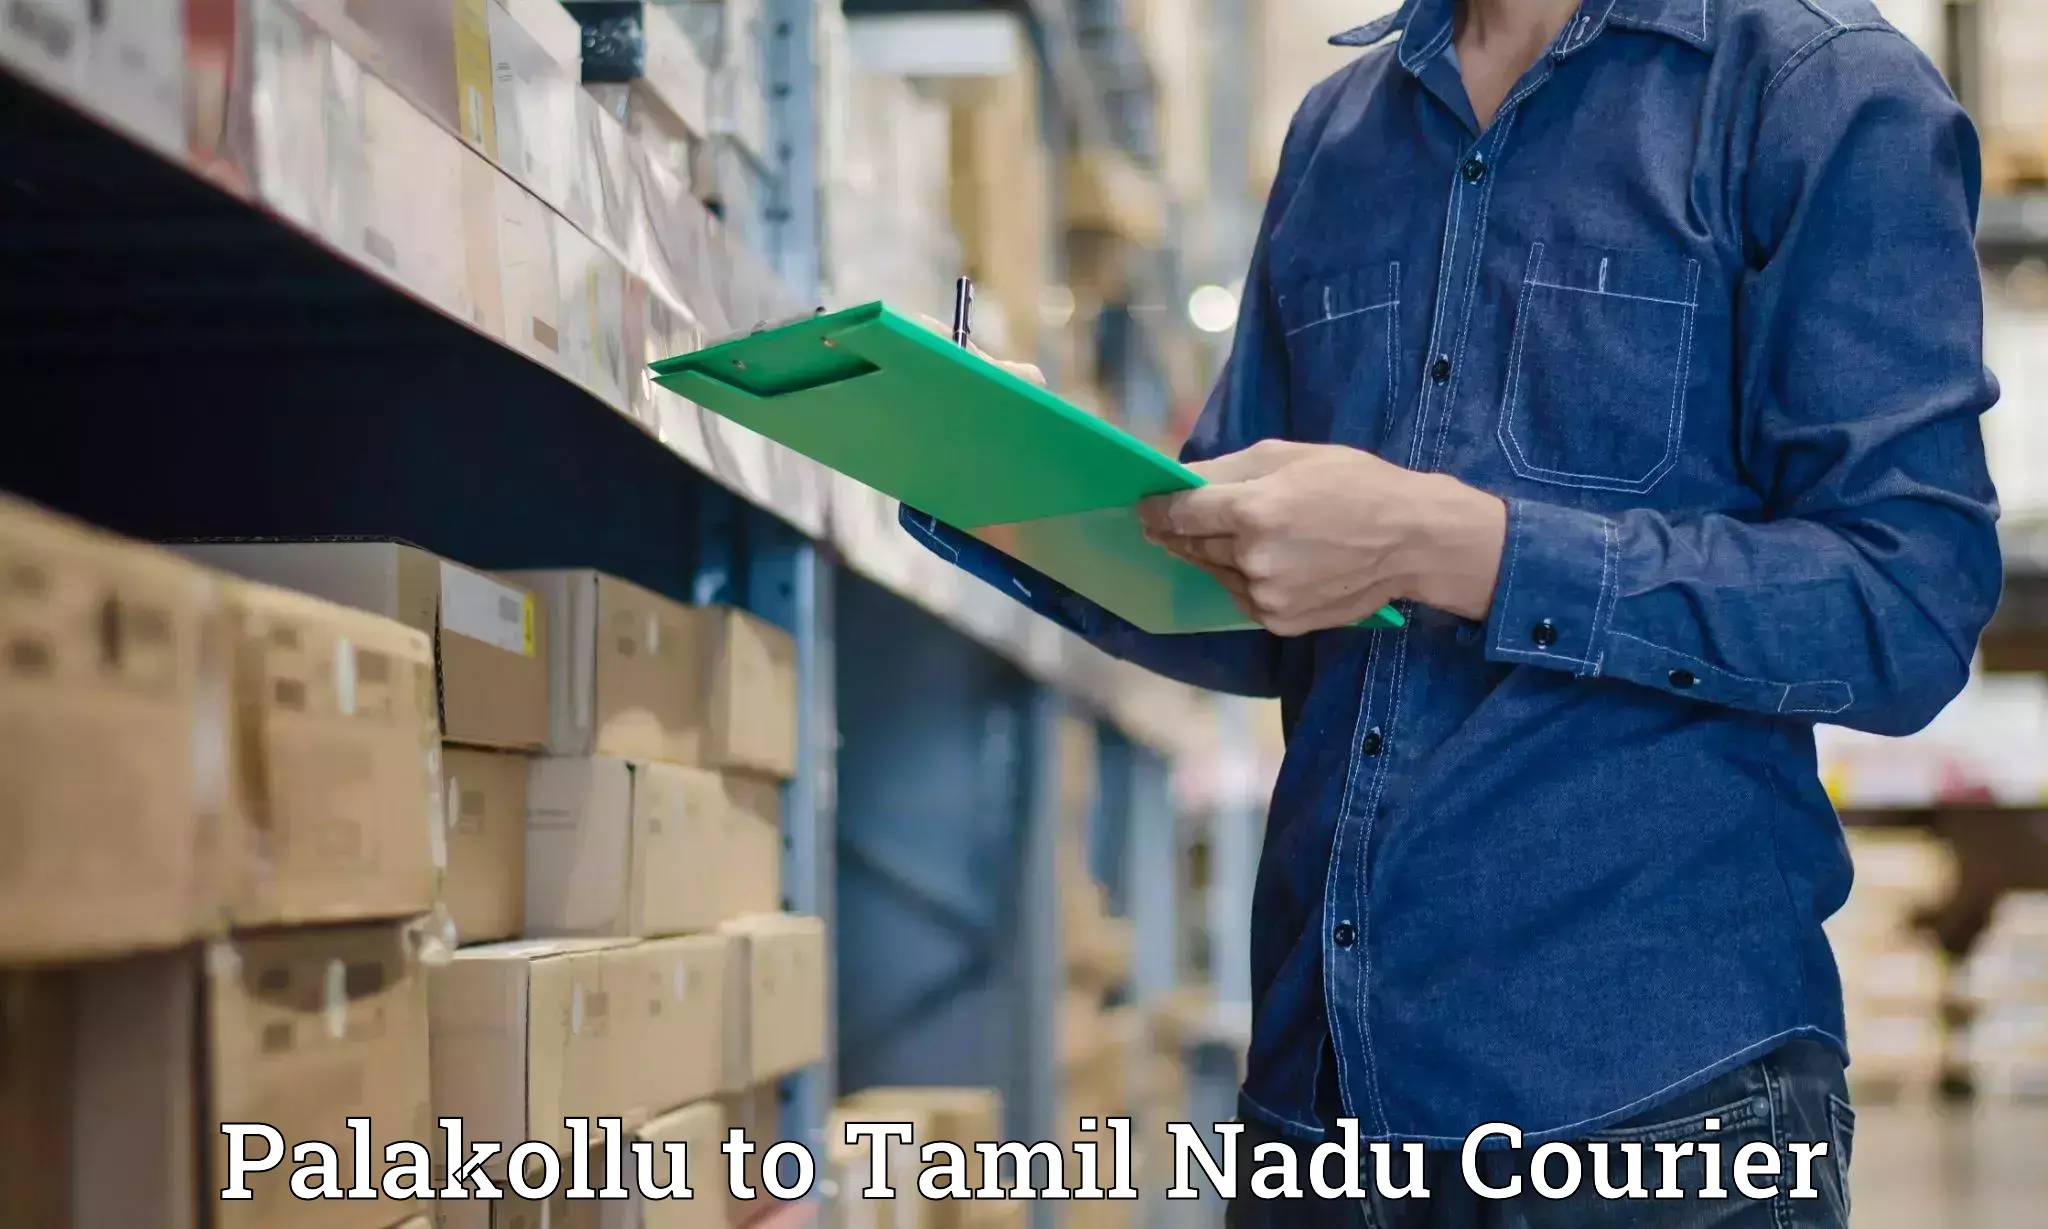 State-of-the-art courier technology Palakollu to Ambasamudram